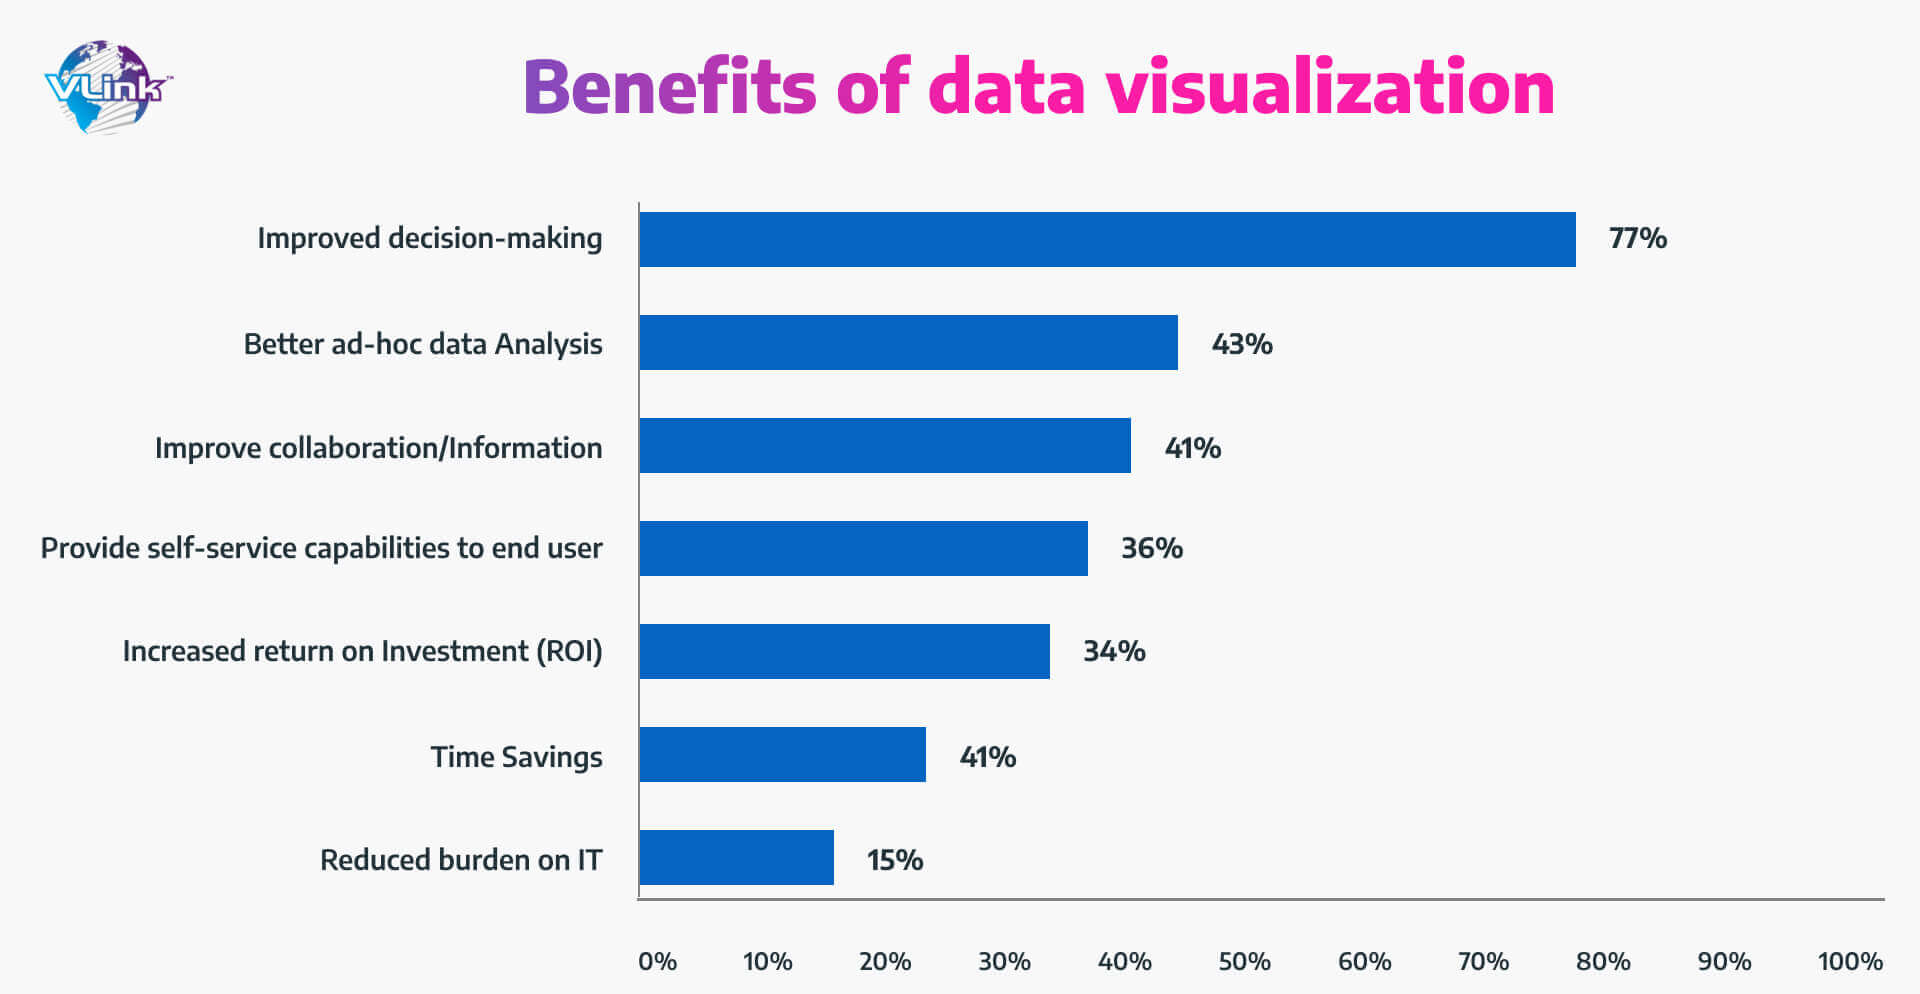 Benefits of Data Visualization